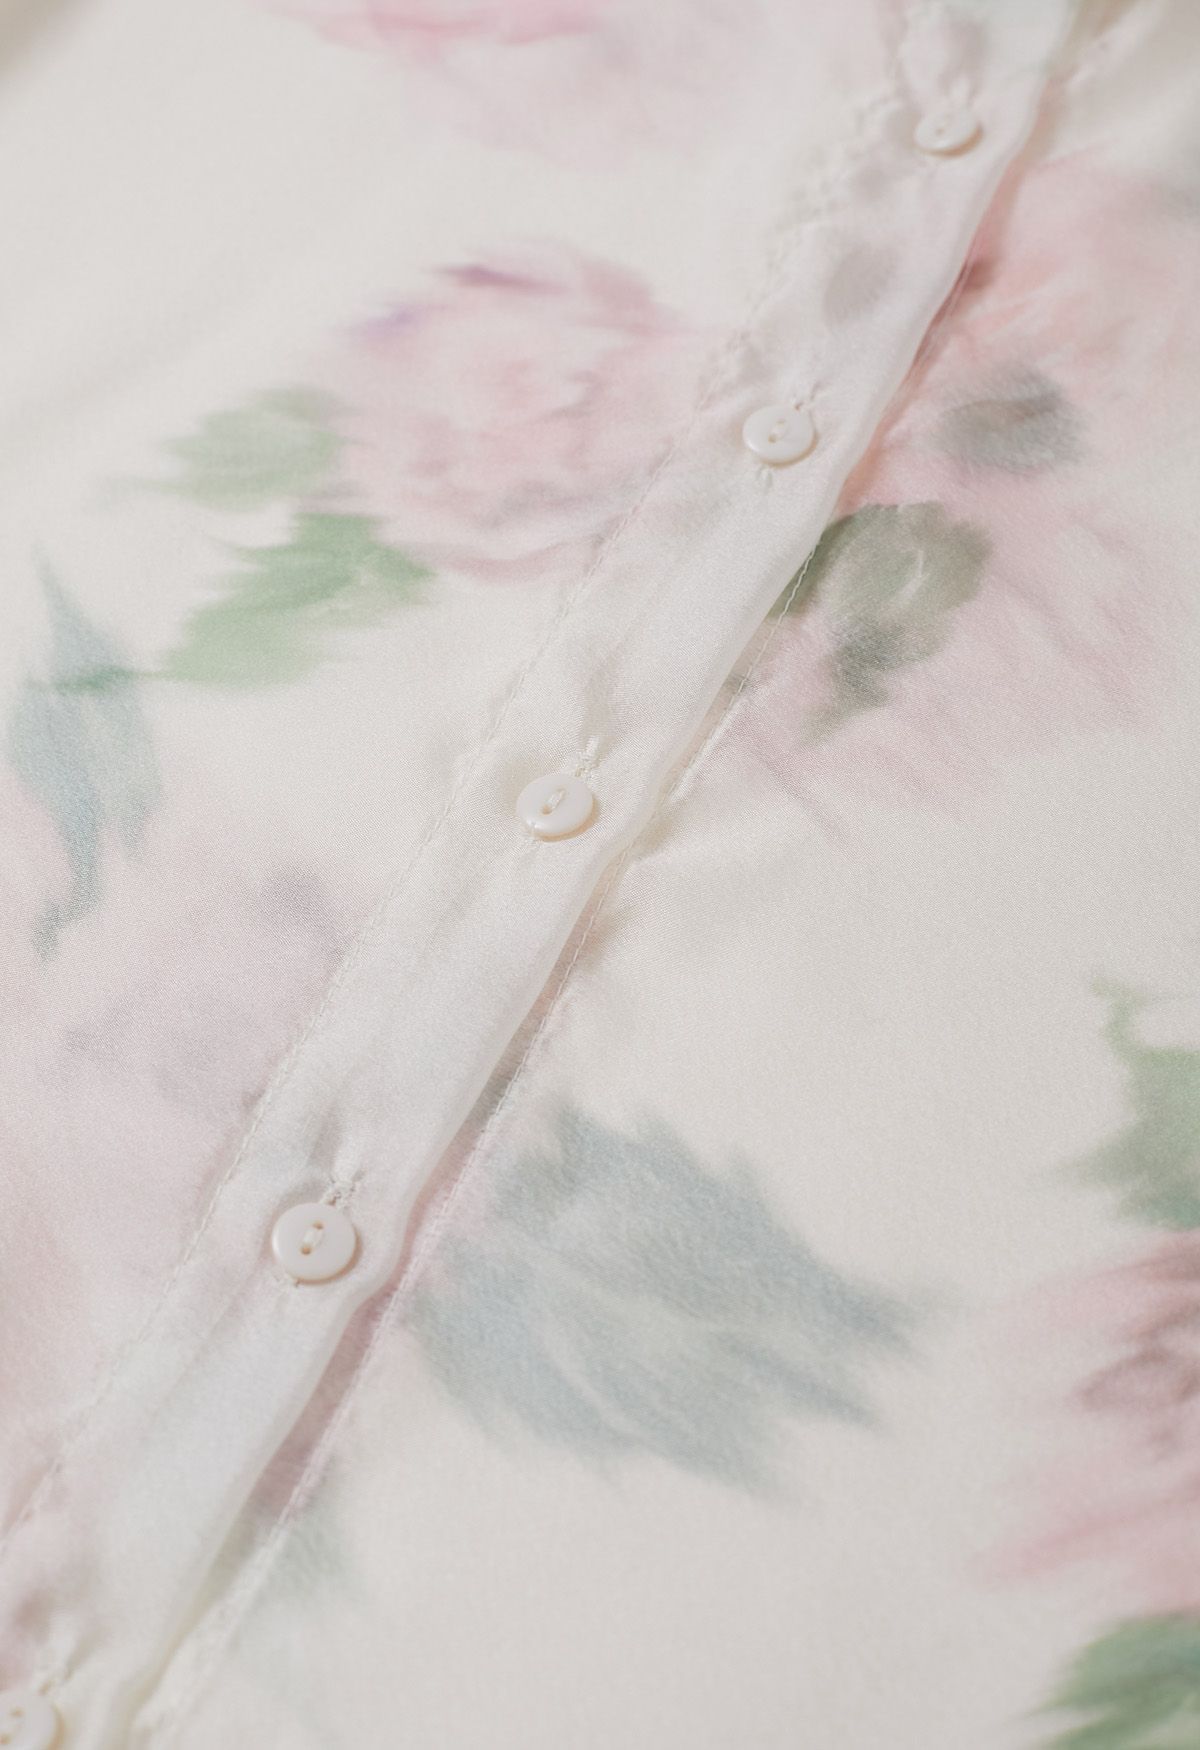 قميص شفاف بعقدة زهور وألوان مائية ساحرة باللون الكريمي